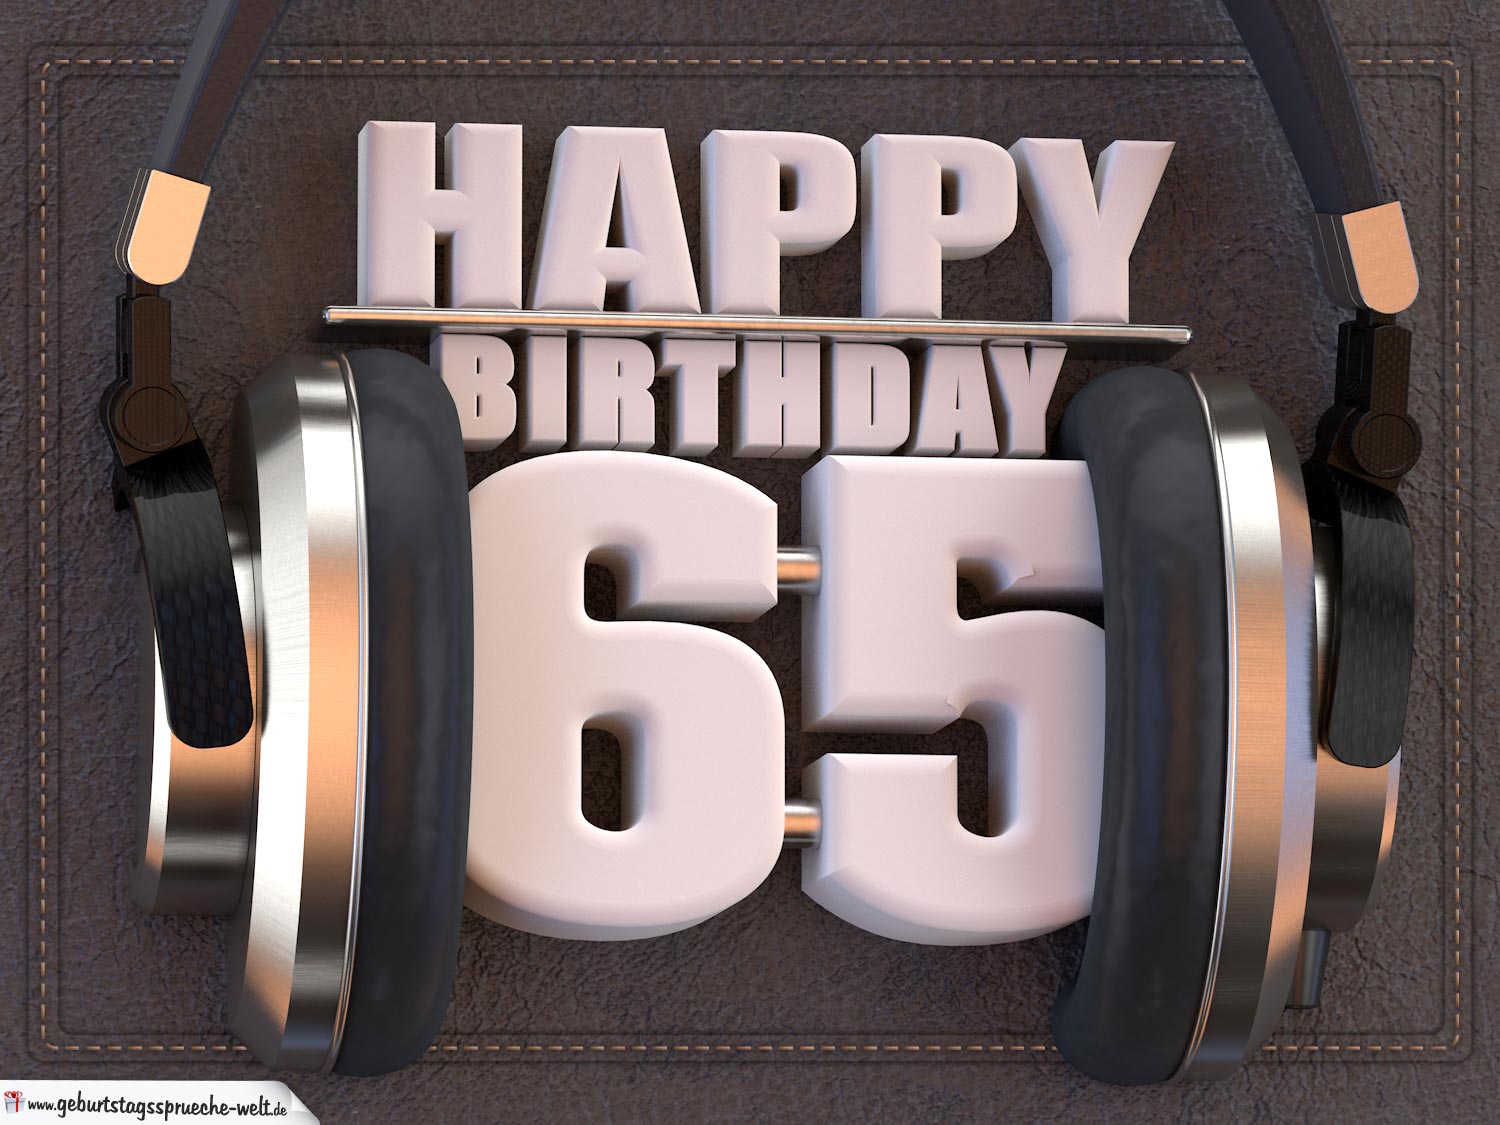 48+ Sprueche zum 14 geburtstag , 65. Geburtstag Karte Happy Birthday Kopfhörer GeburtstagssprücheWelt